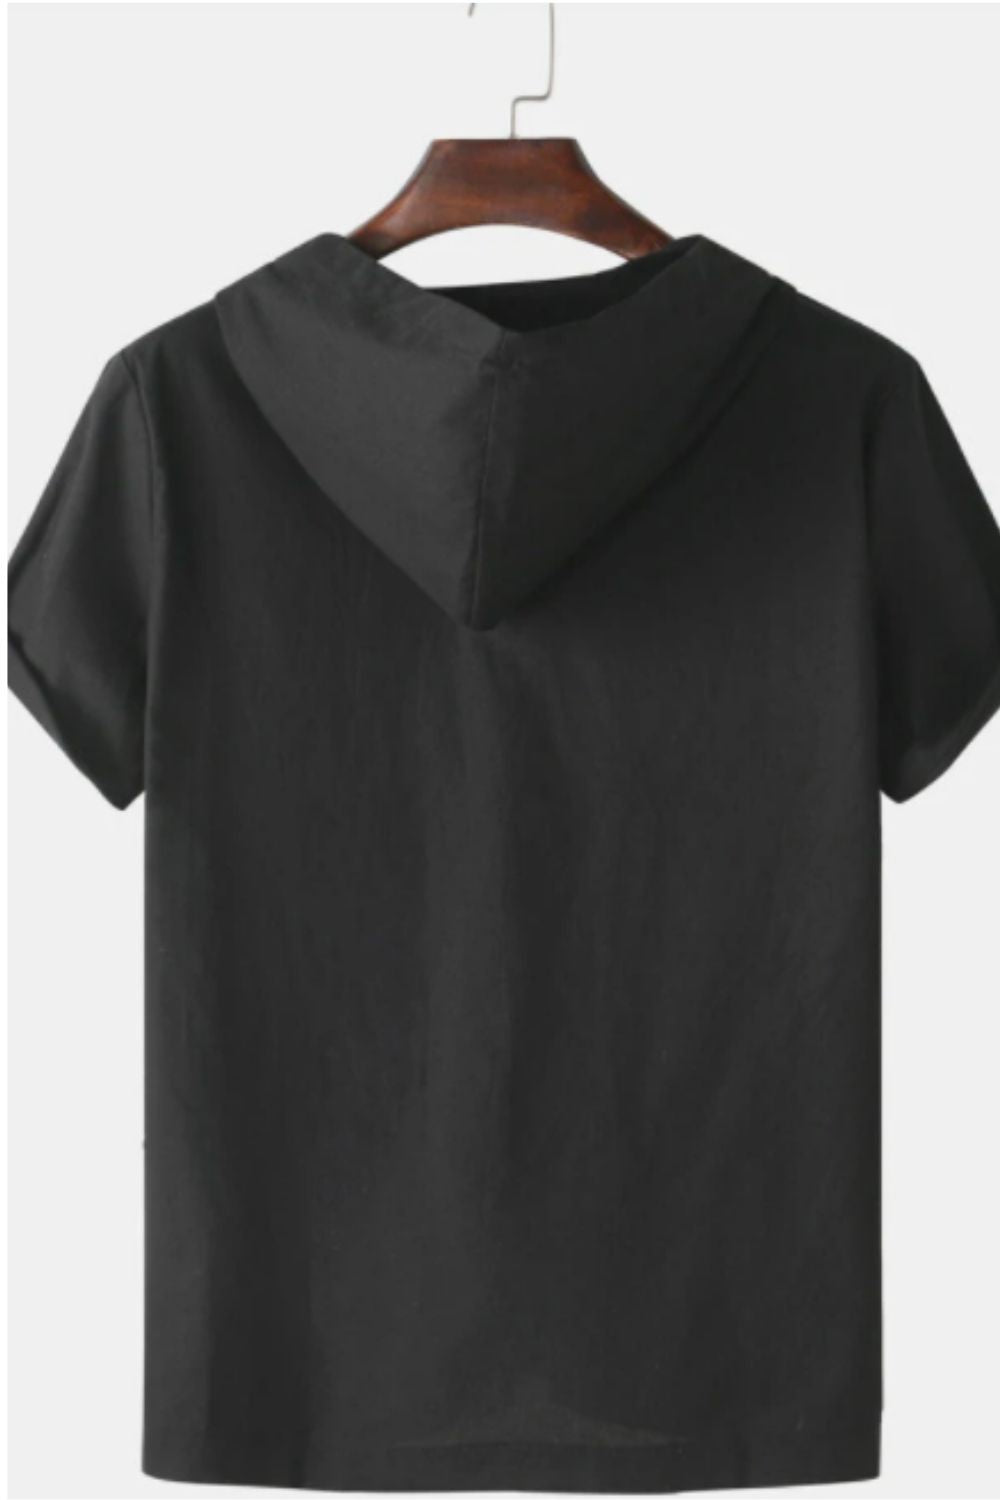 Drawstring Black Hoodie T-shirt – Styched Fashion